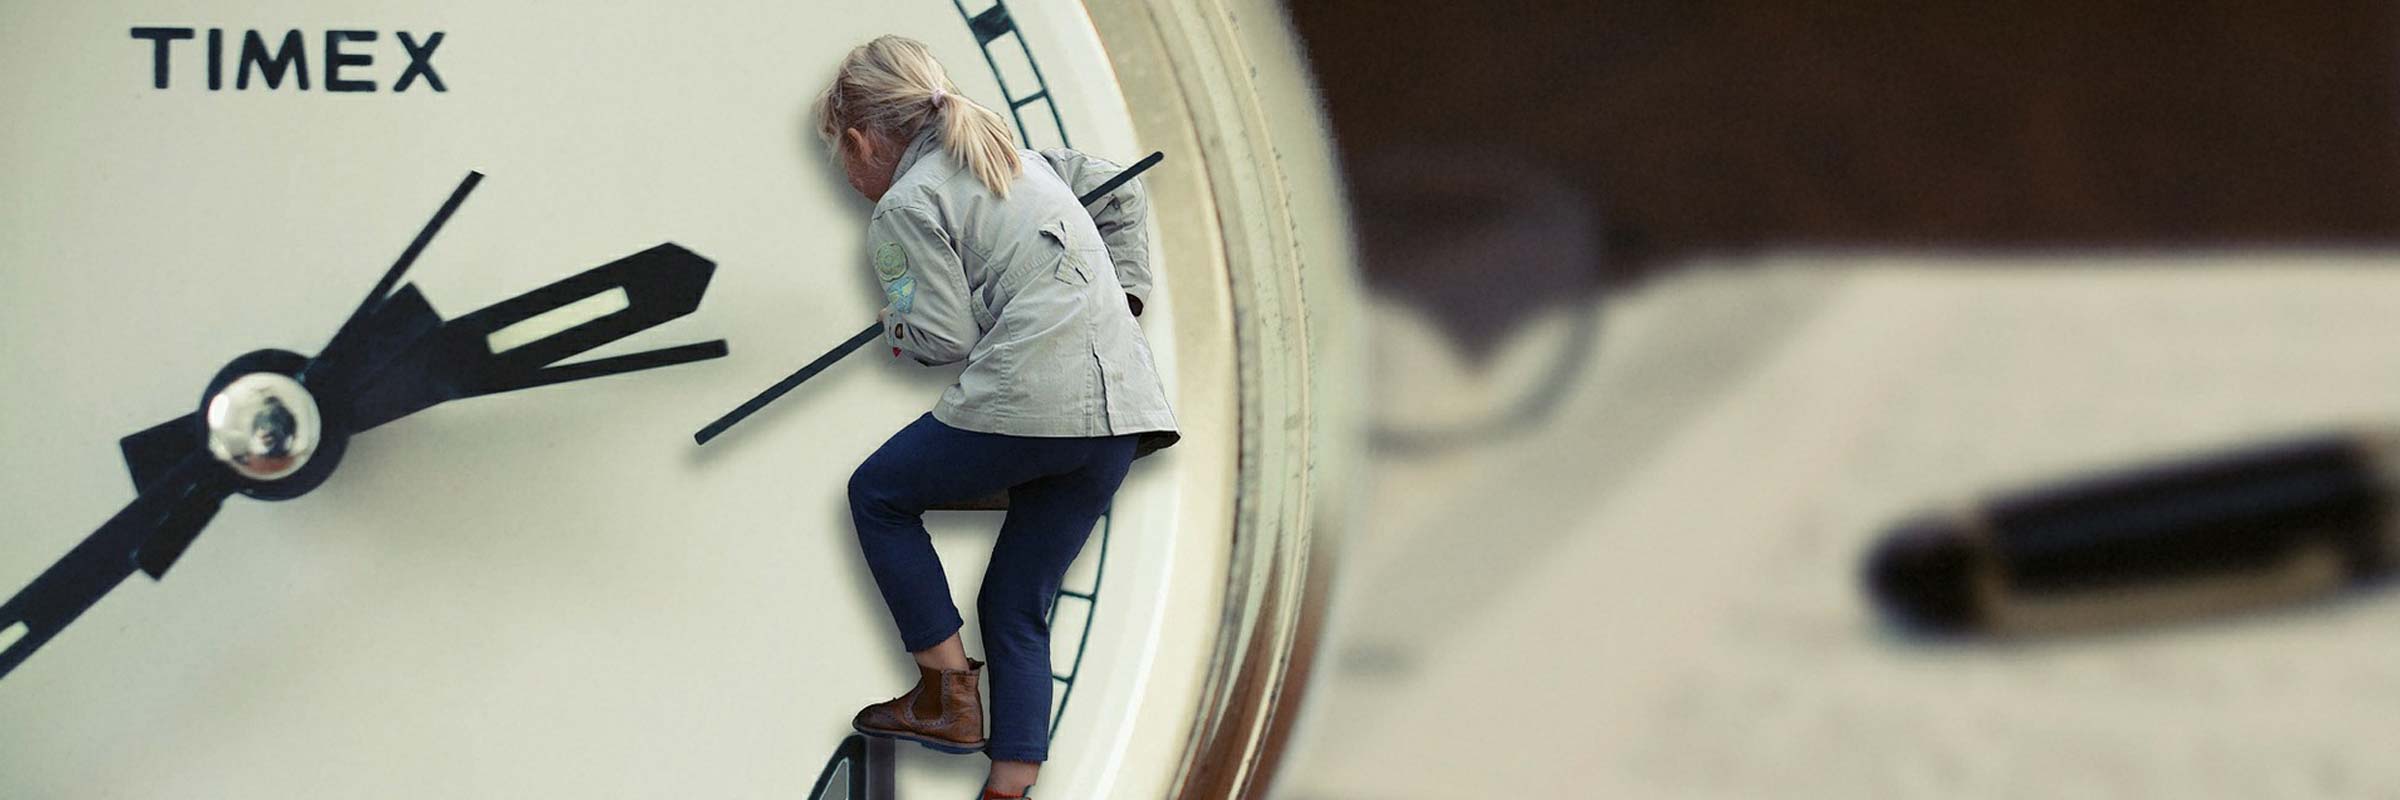 una bambina bionda si arrampica sulle lancette di un orologio